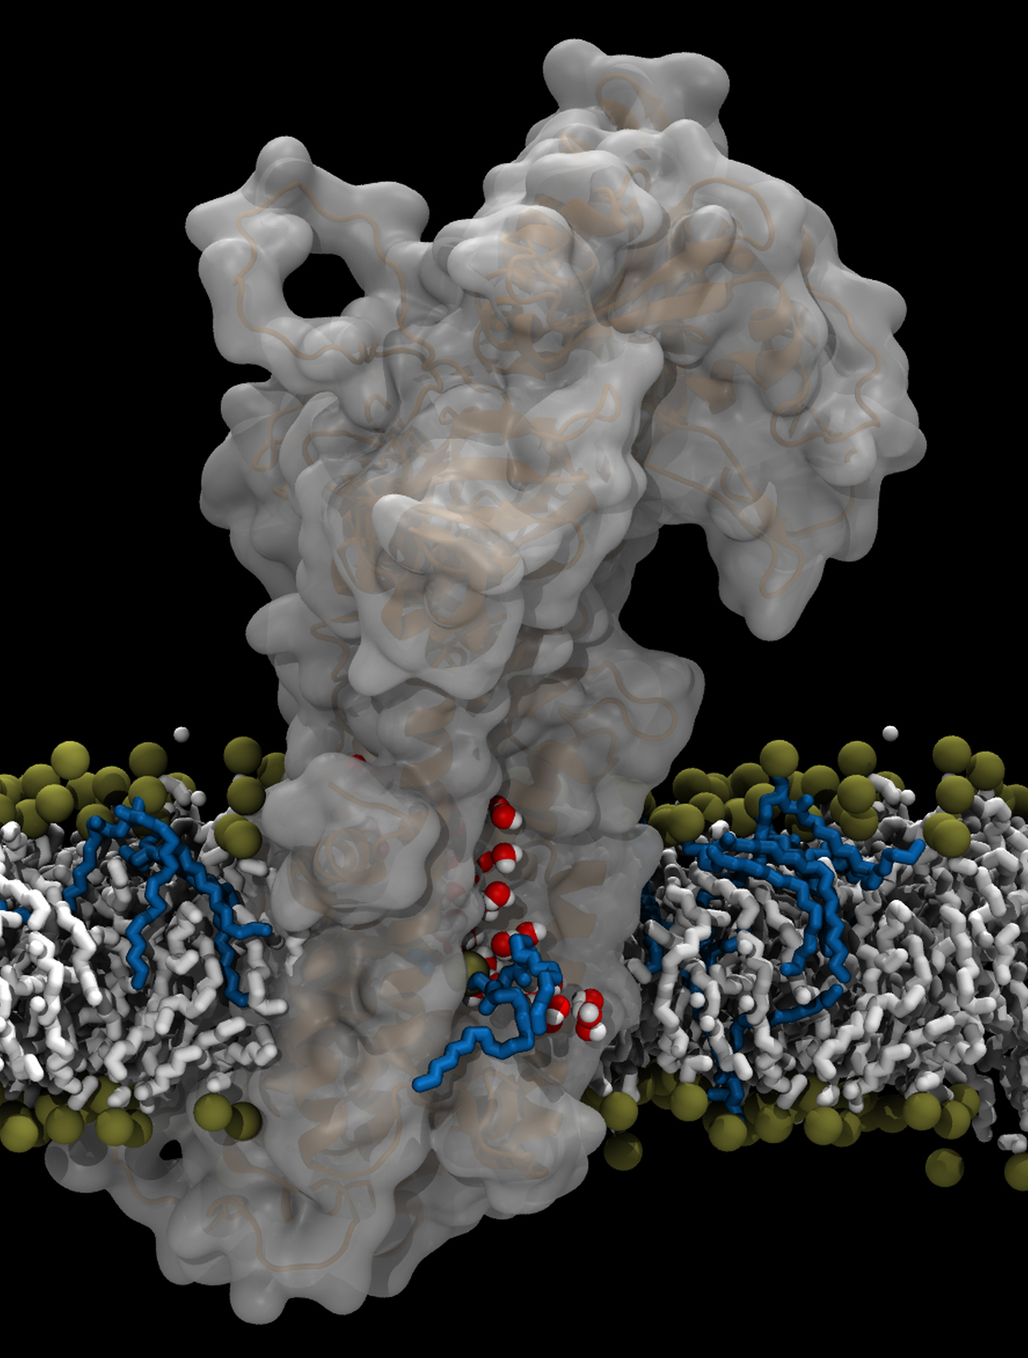 Aarhus-forskernes model for ATP8A2-flippasens transportmekanisme. Flippasemolekylet er det store grå, og man ser fedtmolekylet med blå ”hale” bevæge sig langs en åben kanal i proteinet, hvor der også findes vandmolekyler (røde kugler med hvide p